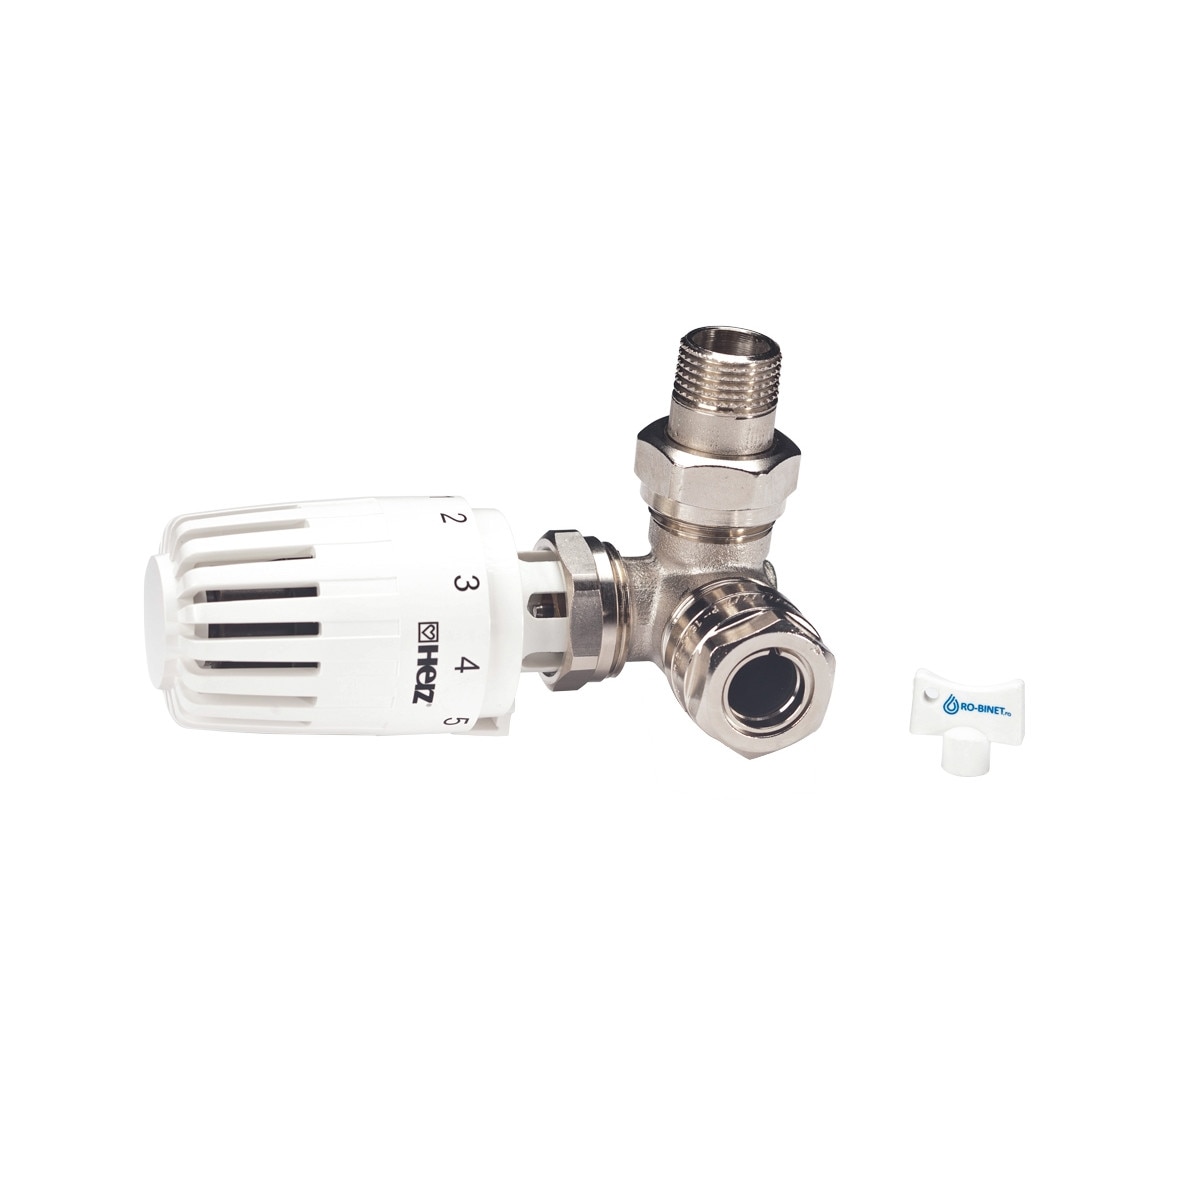 Oops Kilometers intentional Set termostatic Herz Armaturen alcatuit din robinet cu ventil termostatic  in 3 axe (AB), filet exterior, cap termostatic Projekt si conectori (  pentru teava de CU de 15 sau PexAl de 16) - eMAG.ro